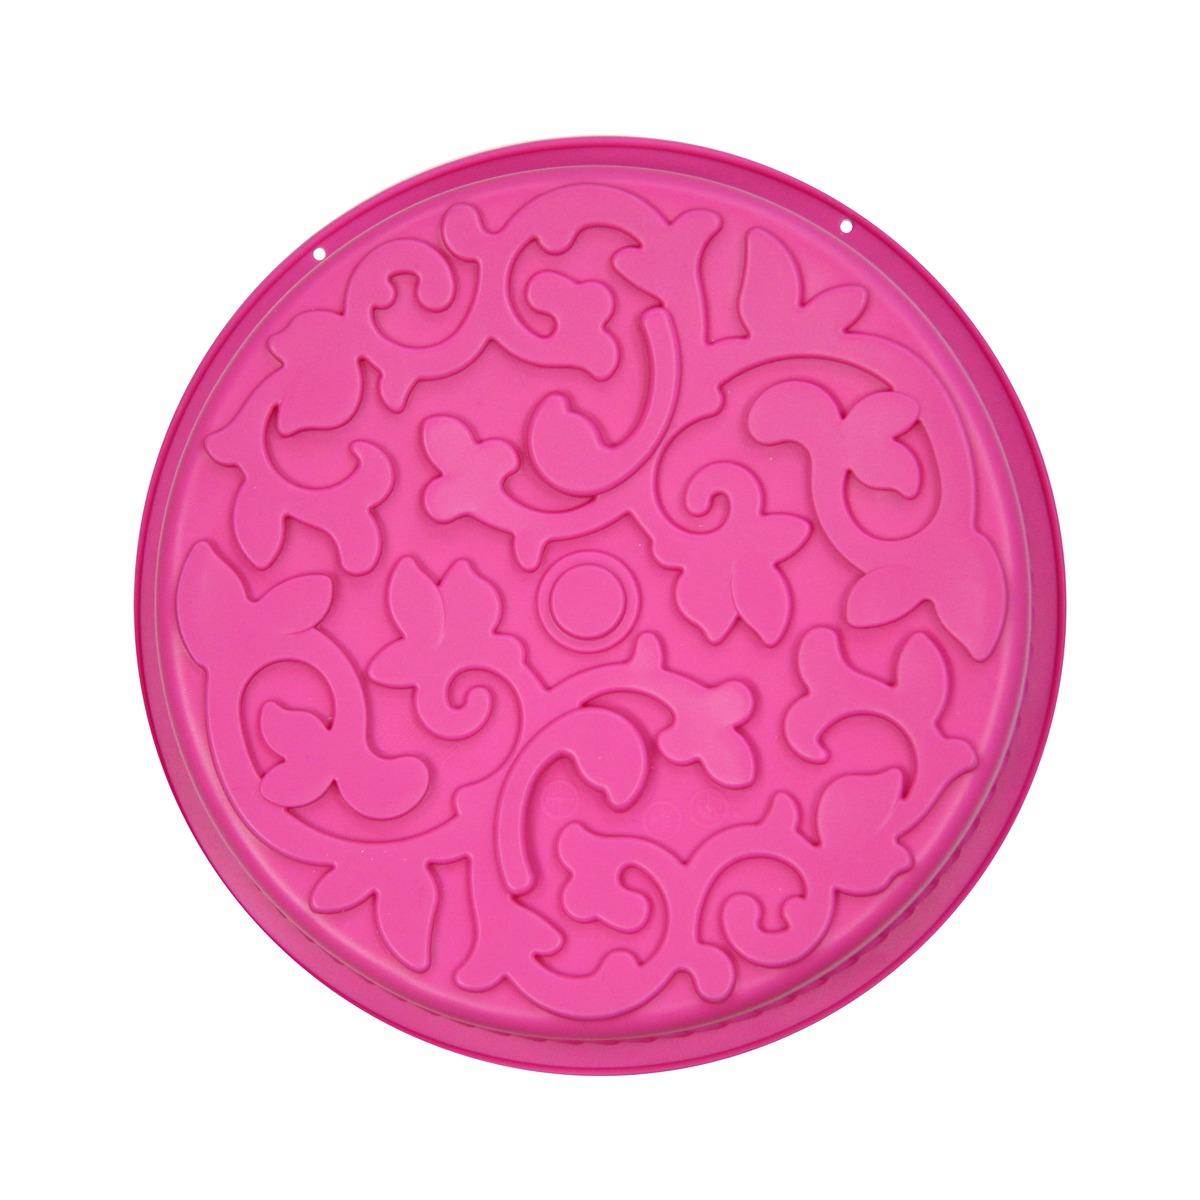 Moule à gâteau motif arabesque - Antiadhésif - Diamètre 27 cm - Rose